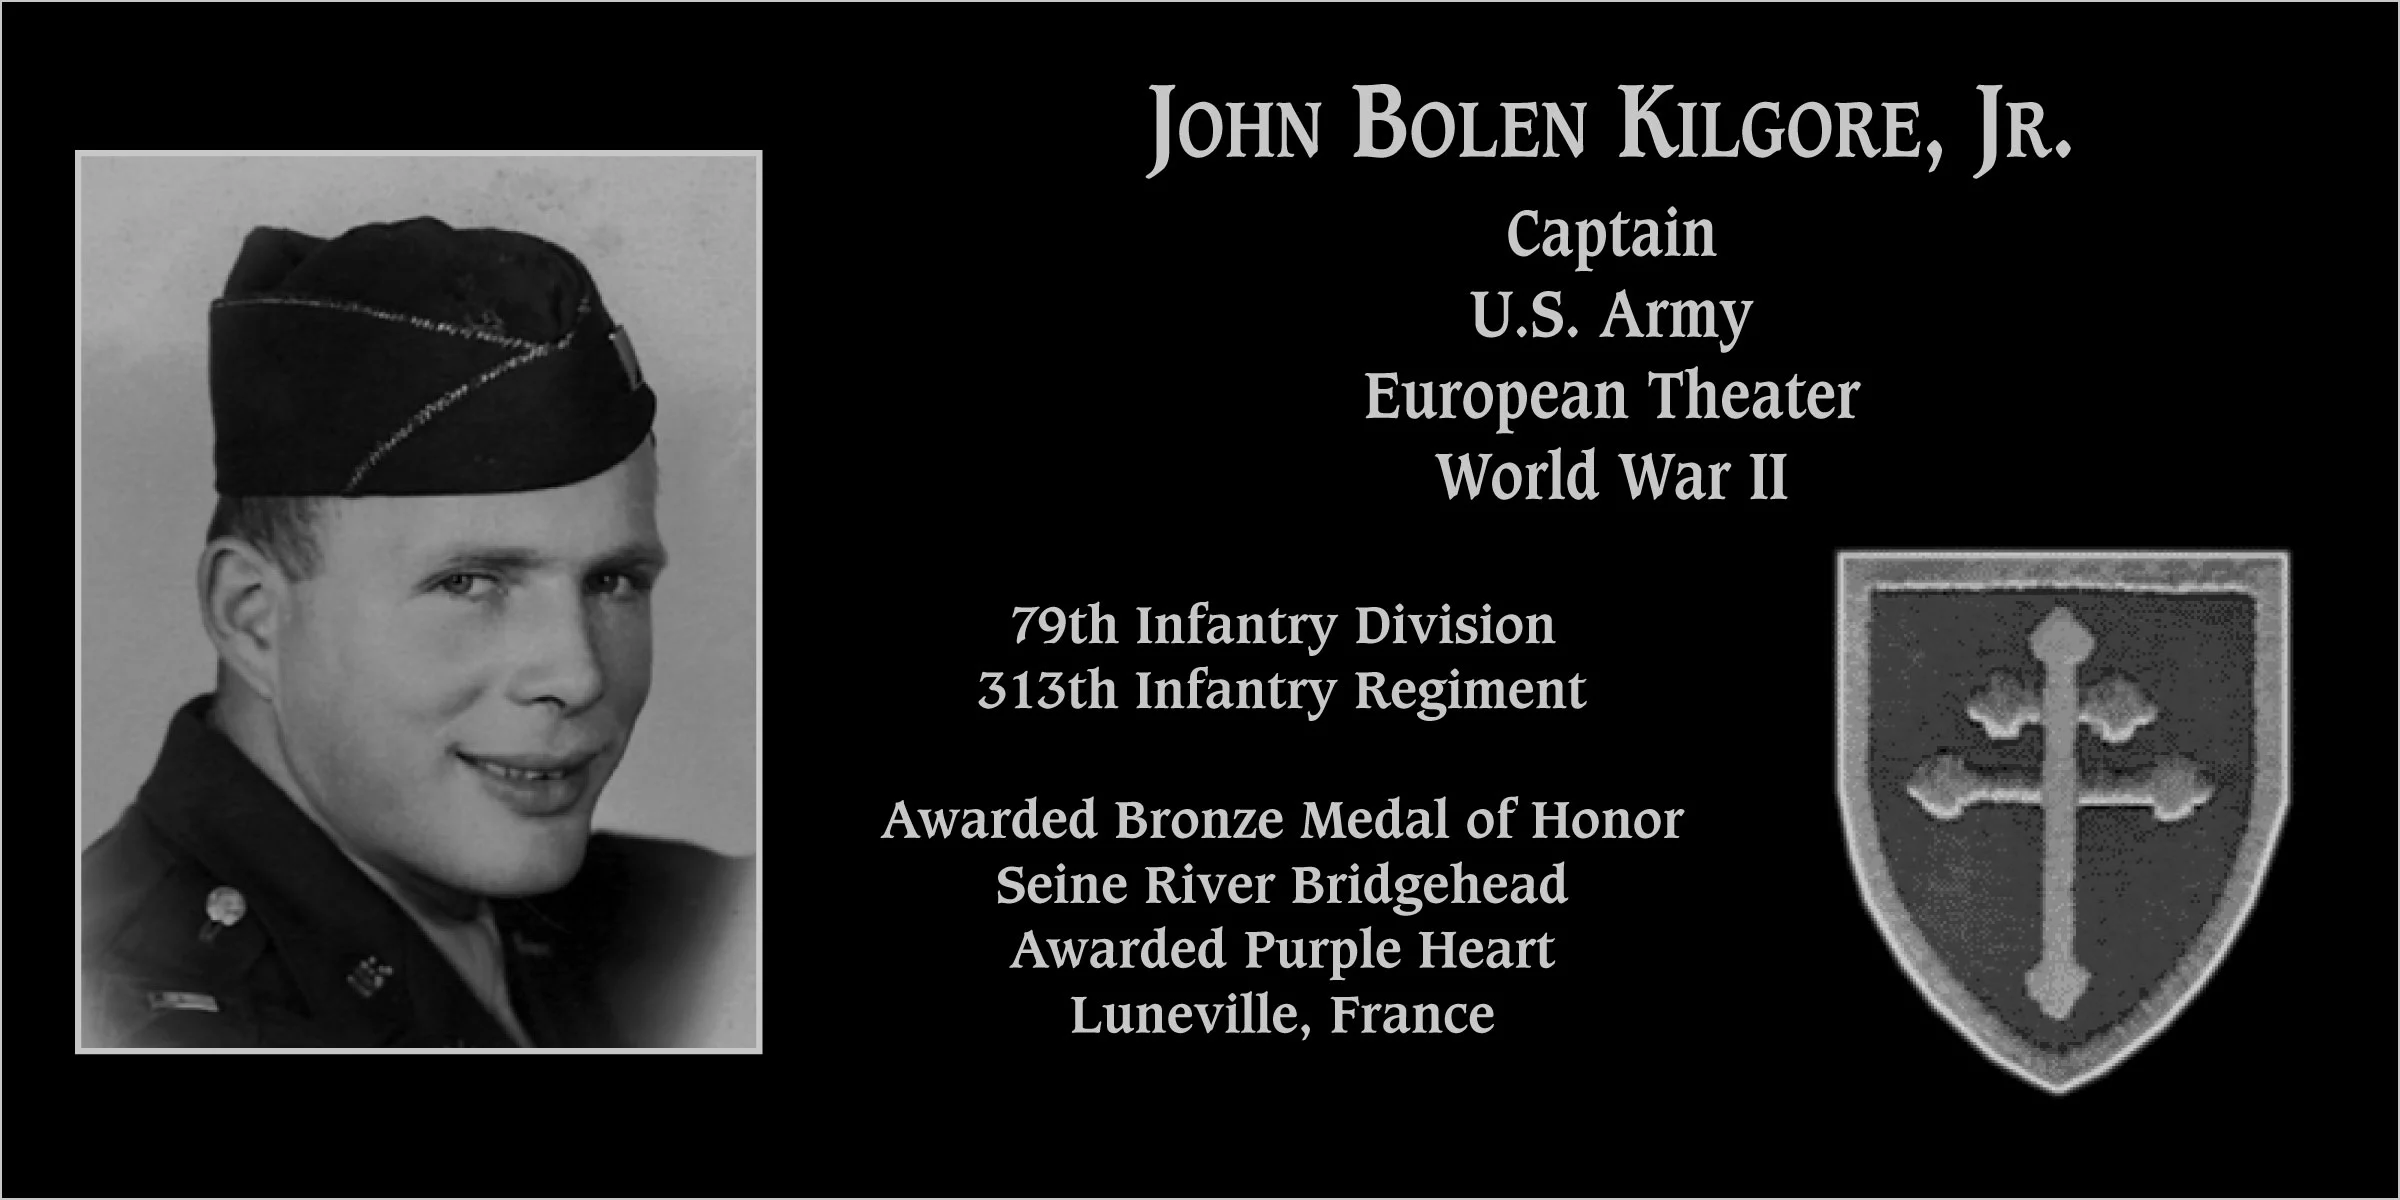 John Bolen Kilgore, jr